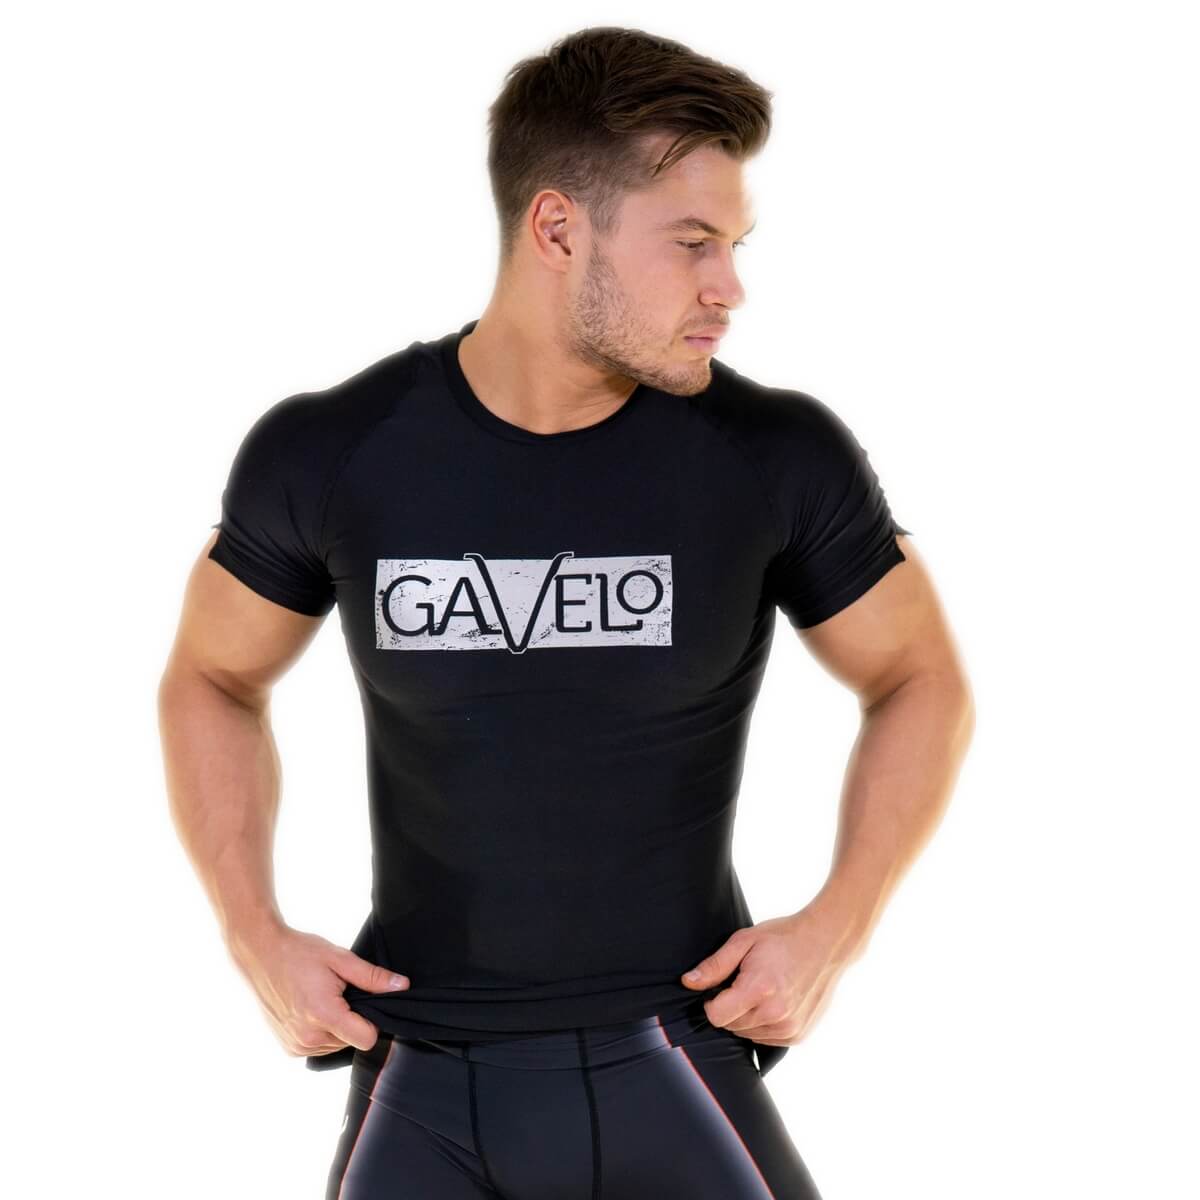 Titan Rashguard T-shirt, black, Gavelo